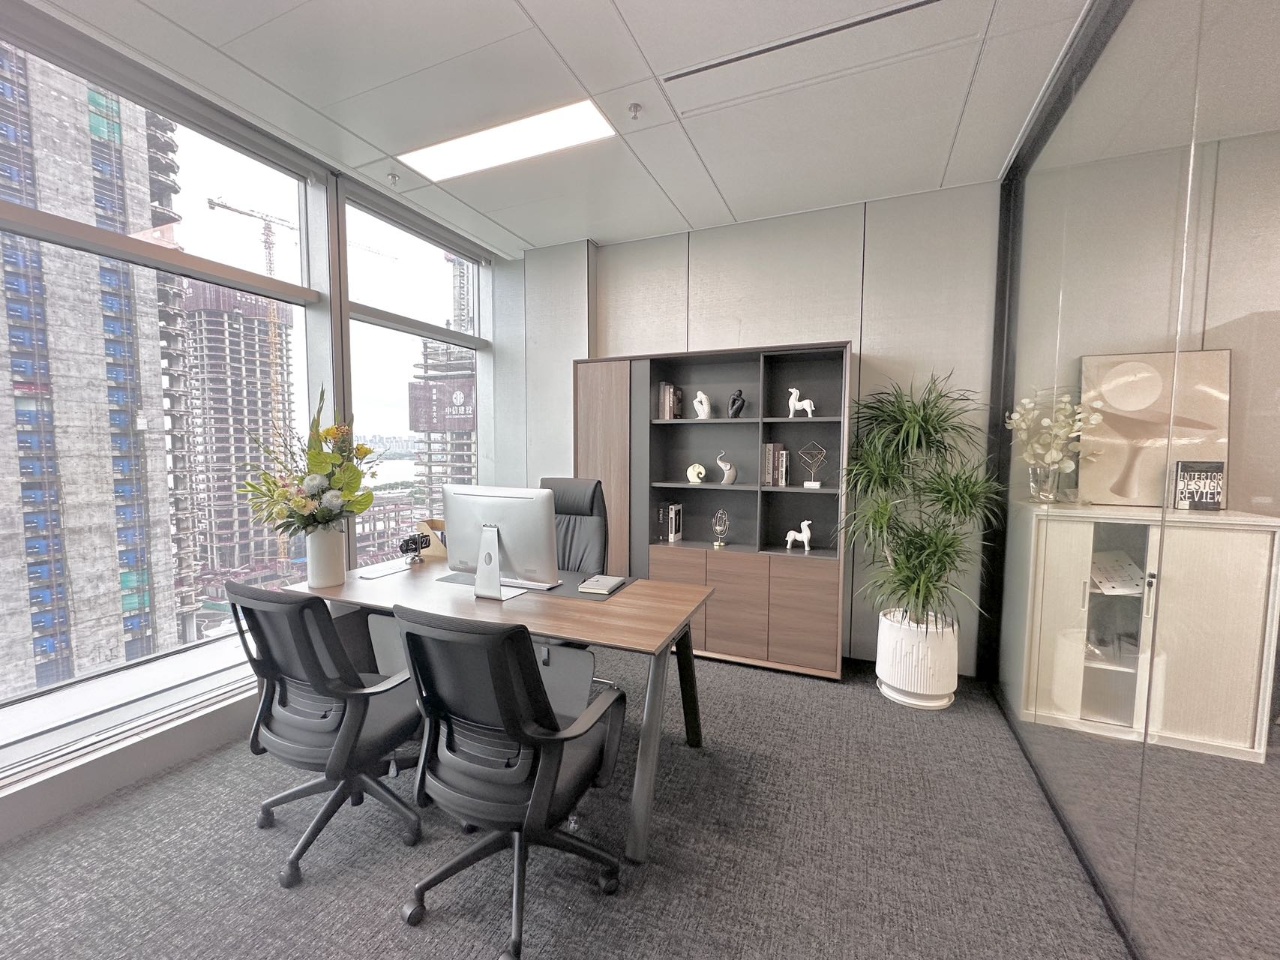 南山红树湾地铁口总部基地新出280平超甲级写字楼办公室出租